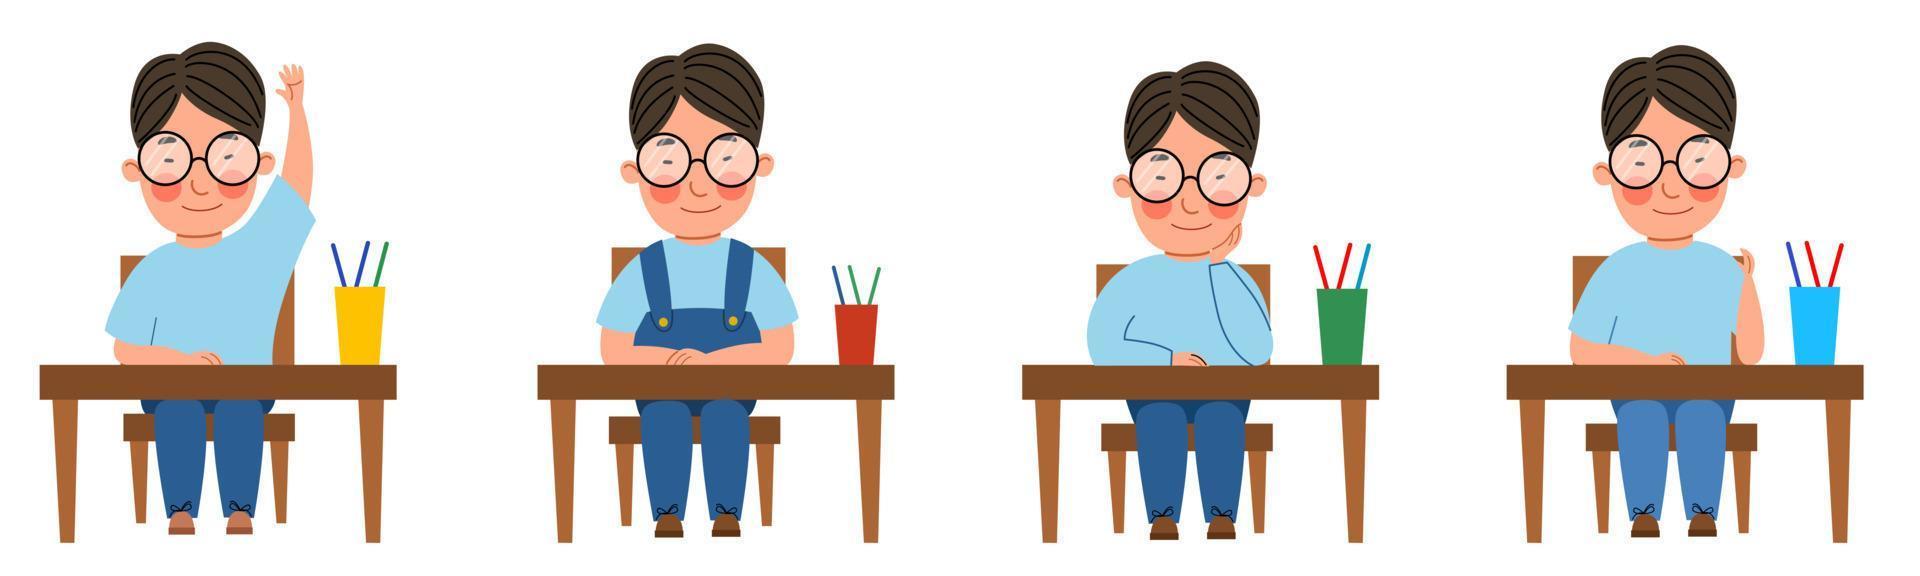 Eine Reihe von Illustrationen mit einem Schüler, der an einem Klassentisch sitzt. ein asiatischer junge mit brille am tisch hob die hand. vektor